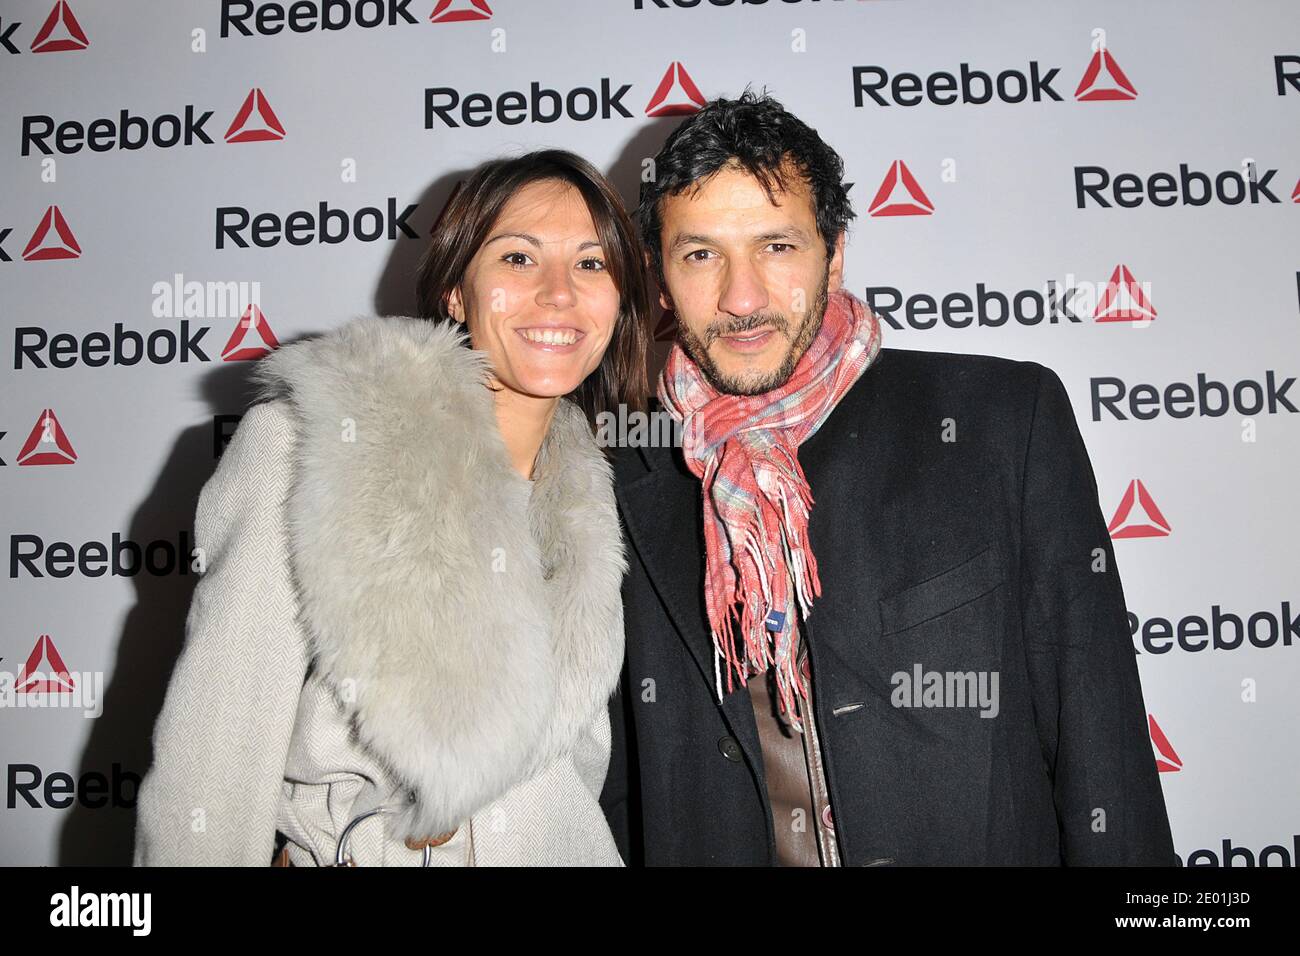 Kamel Belghazi participe à l'événement d'ouverture du magasin Reebok  concept à l'avenue de l'Opéra à Paris, France, le 4 décembre 2013. Photo de  Thierry Plessis/ABACAPRESS.COM Photo Stock - Alamy